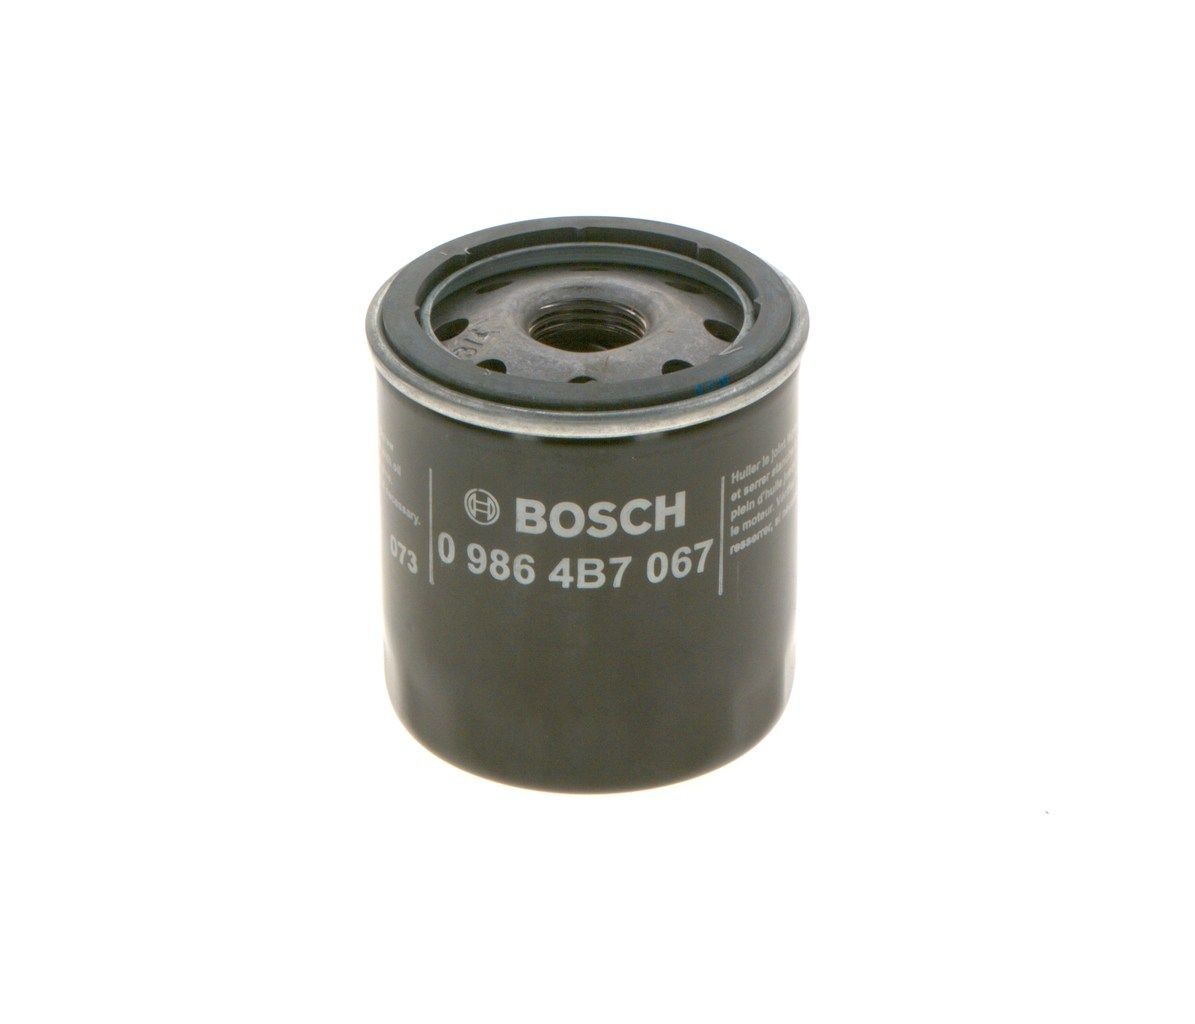 BOSCH Oil filter 0 986 4B7 067